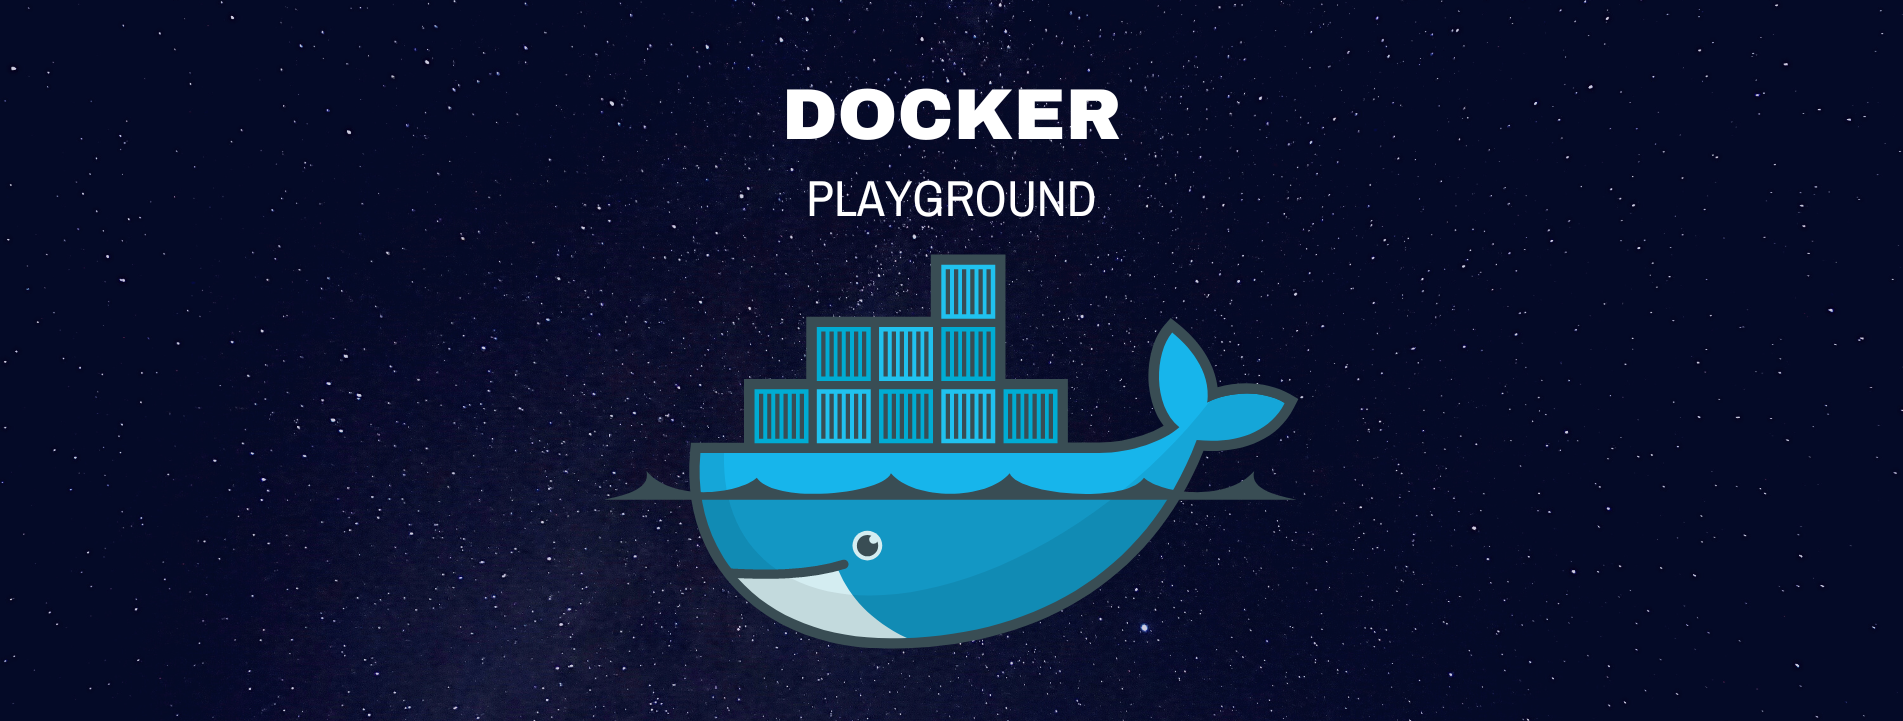 Docker Playground